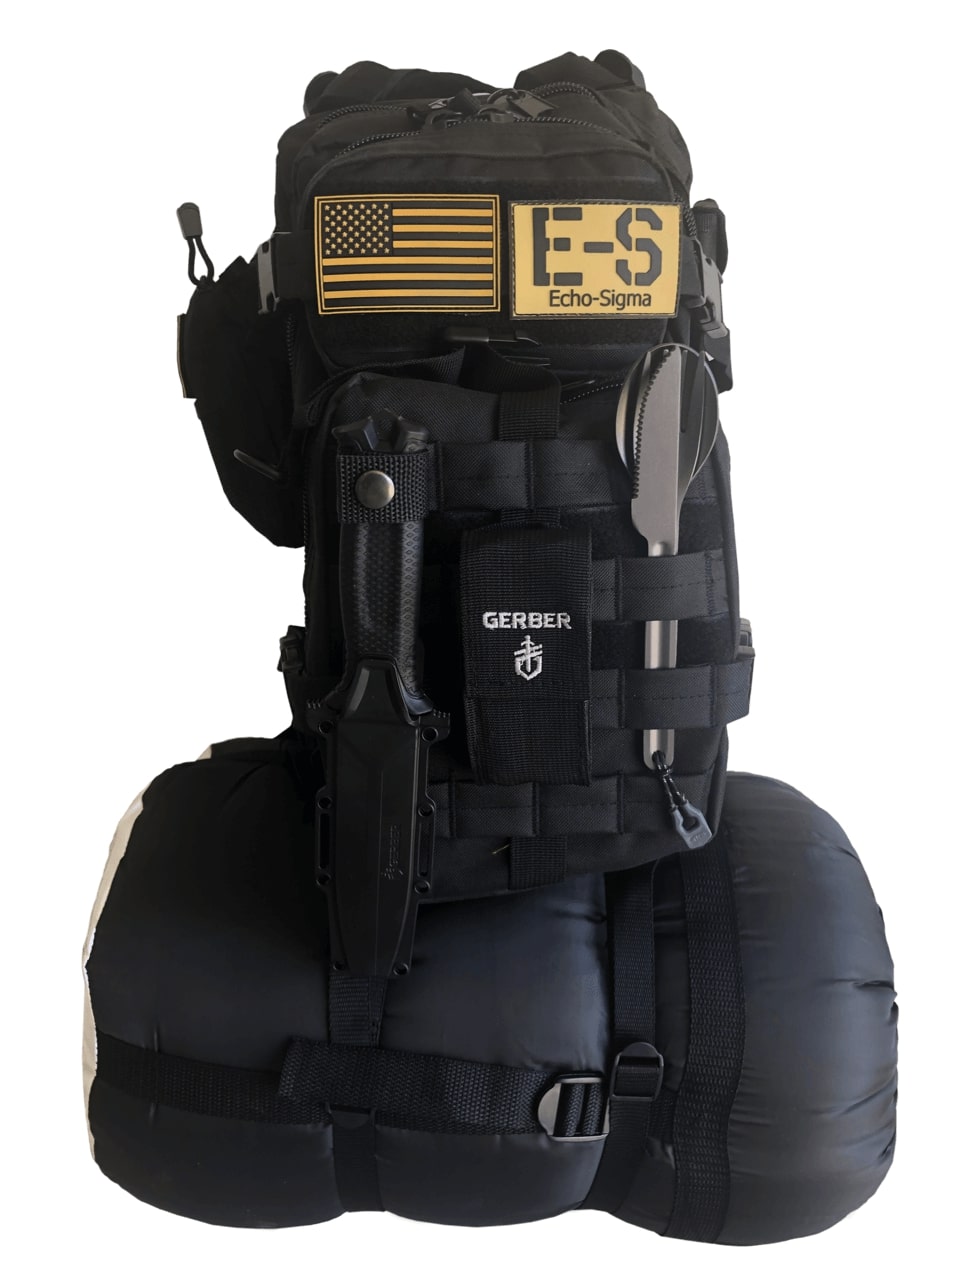 Echo-Sigma Campout Survival Bag - Outdoor Weekend Bag